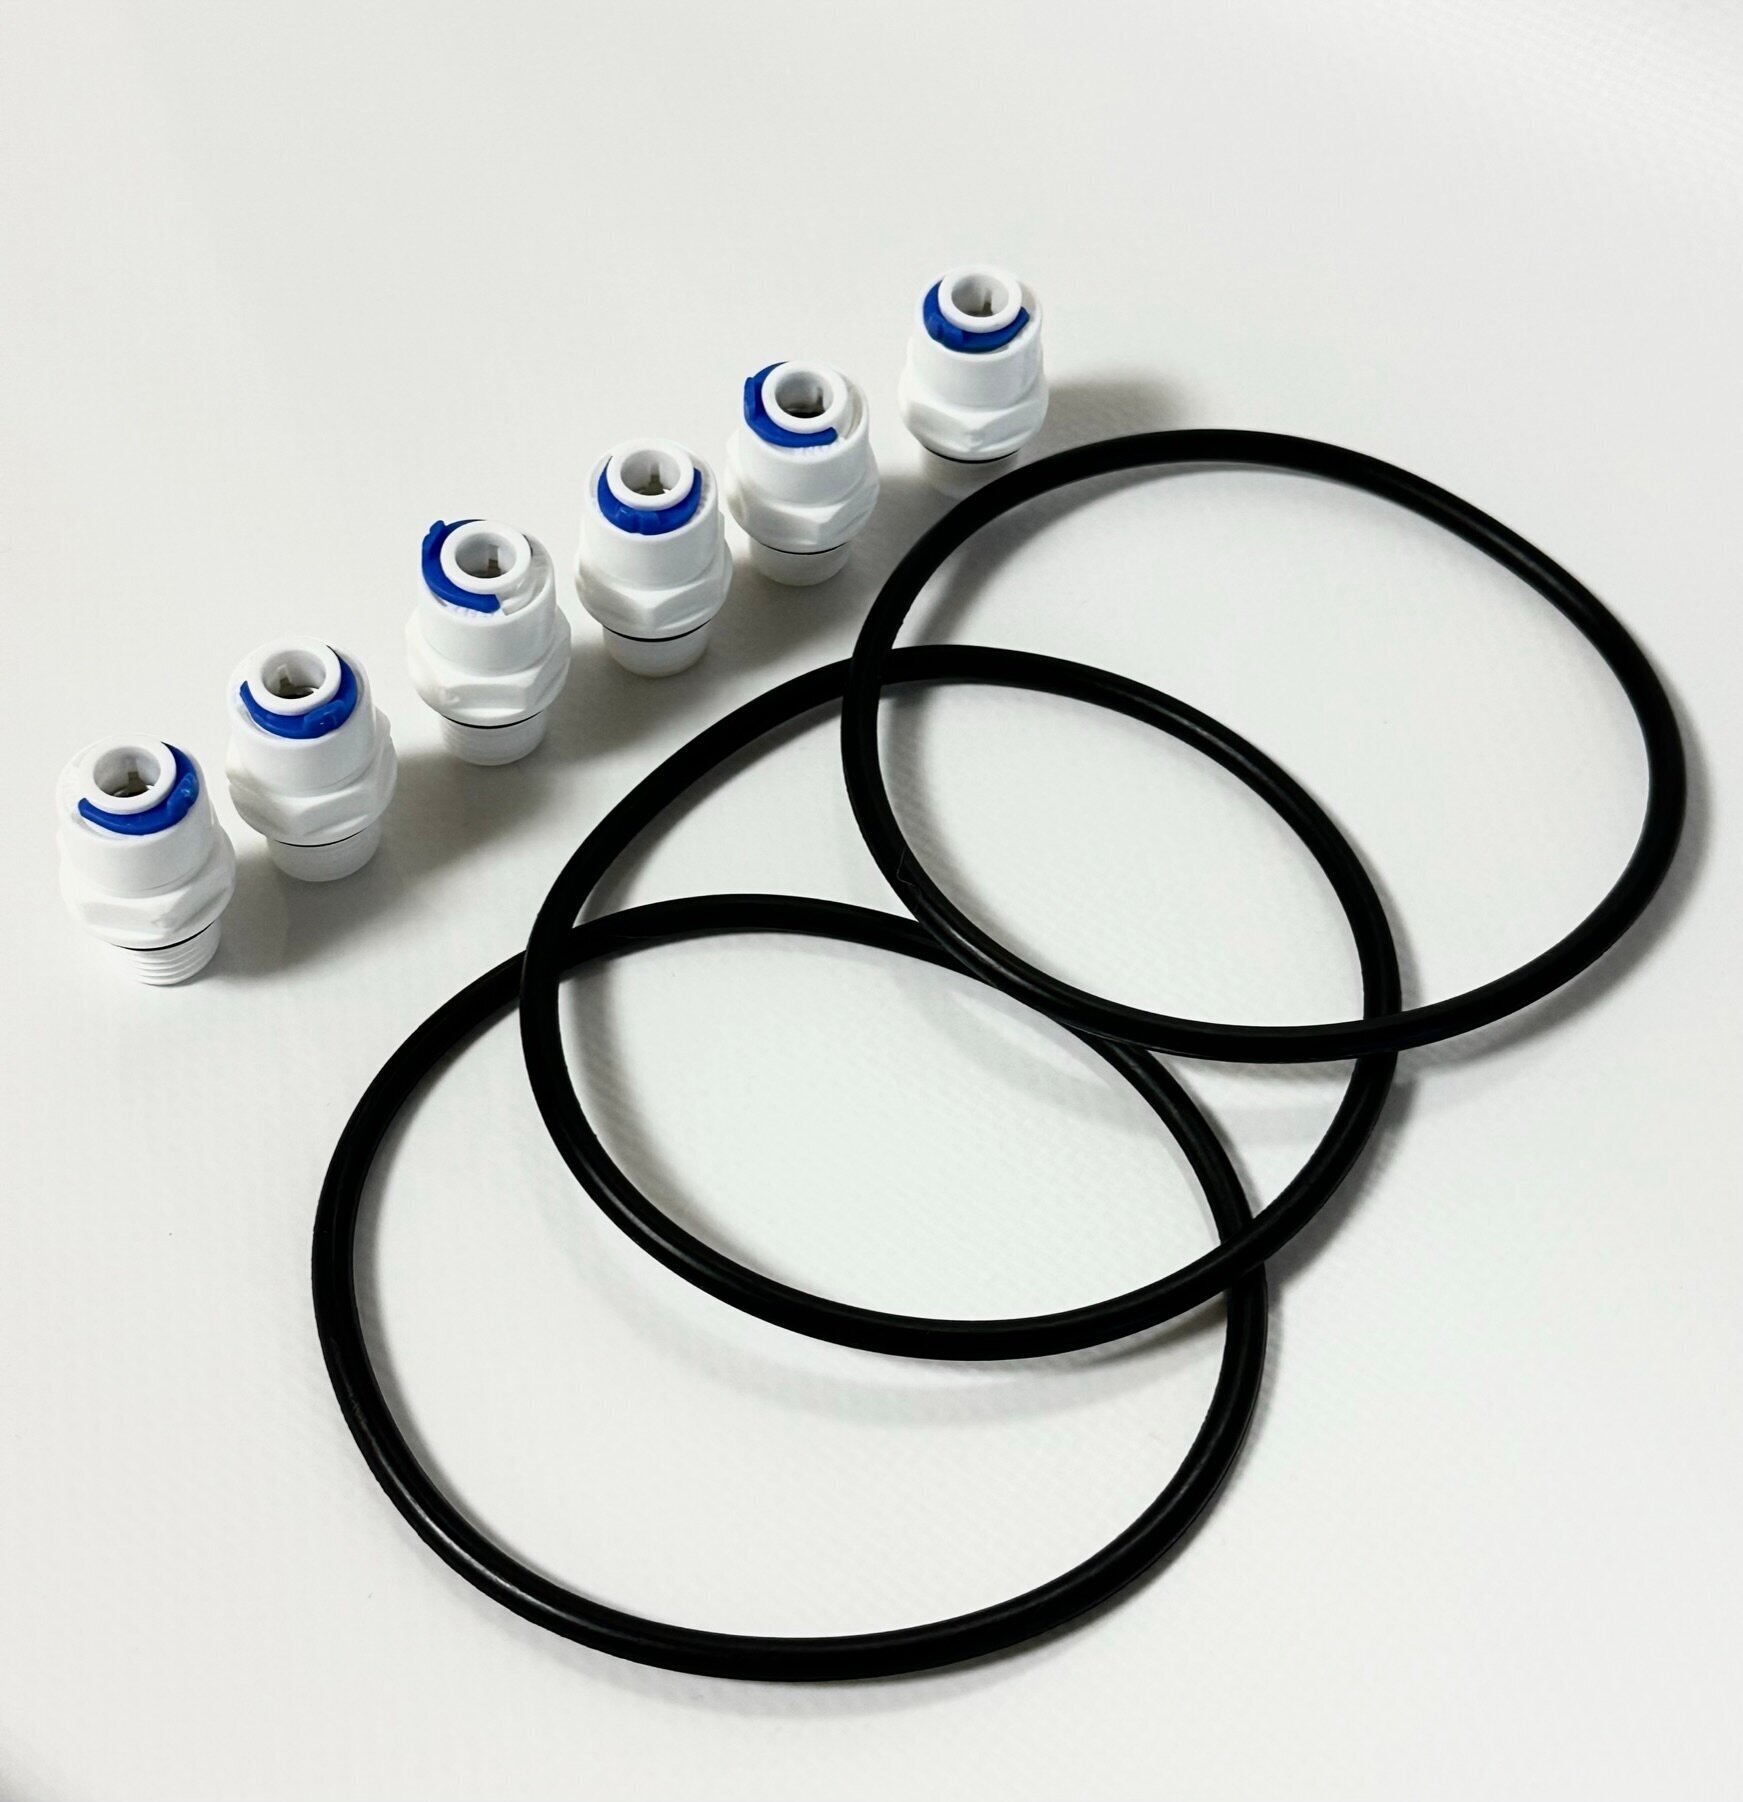 Уплотнительное кольцо (прокладка) для колб фильтра размера Slim Line 10 - 3 шт. + 6 фитингов 1/4 - фотография № 4